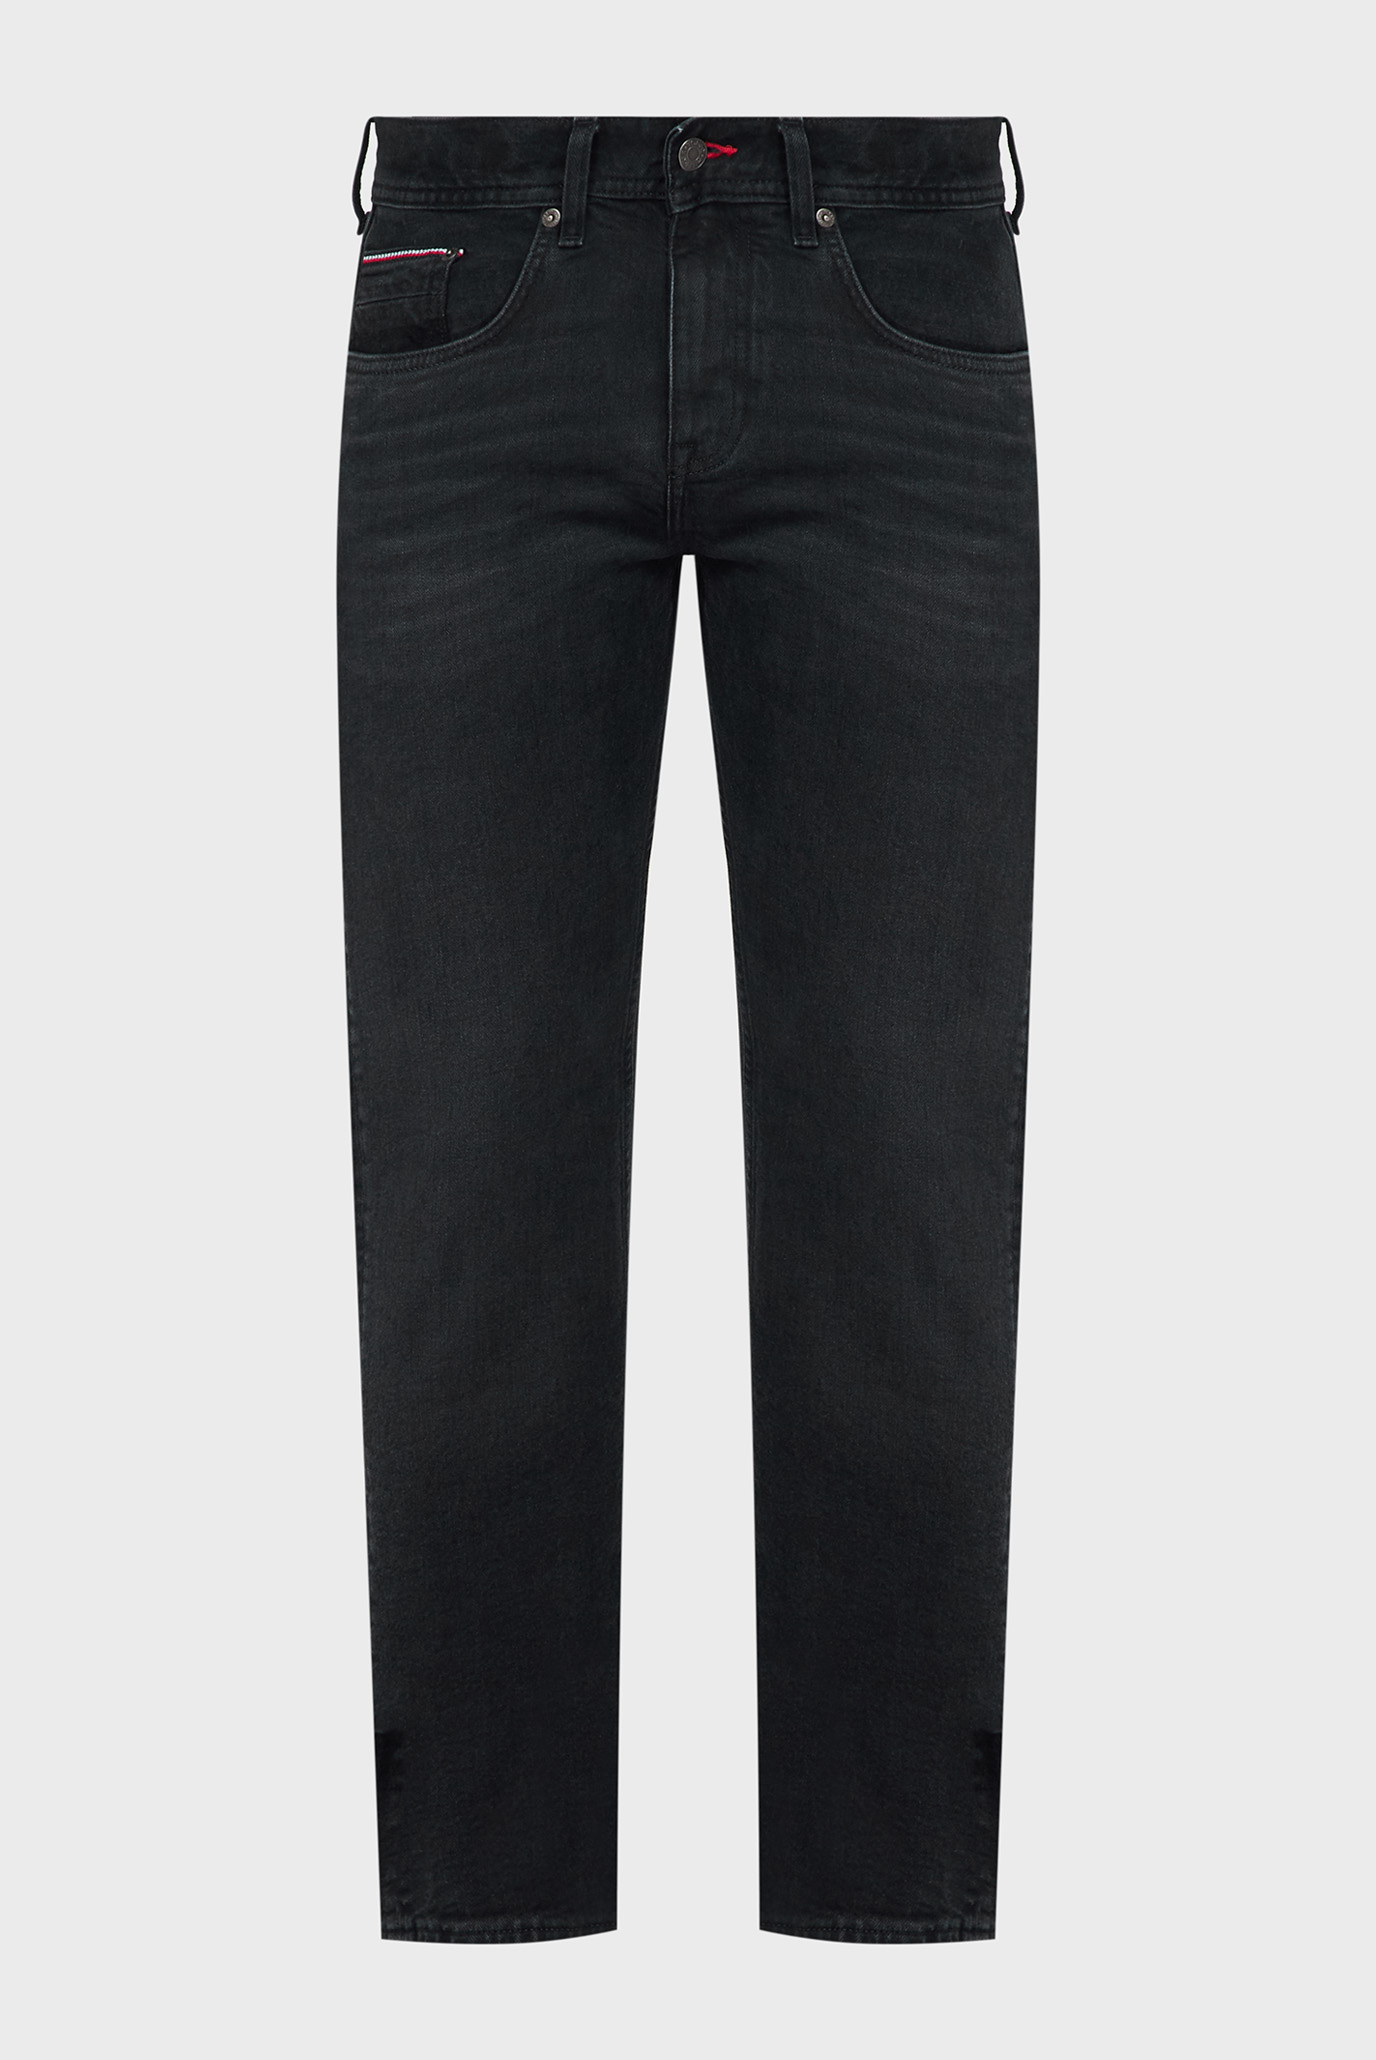 Мужские черные джинсы STRAIGHT DENTON STR SPOKE 1